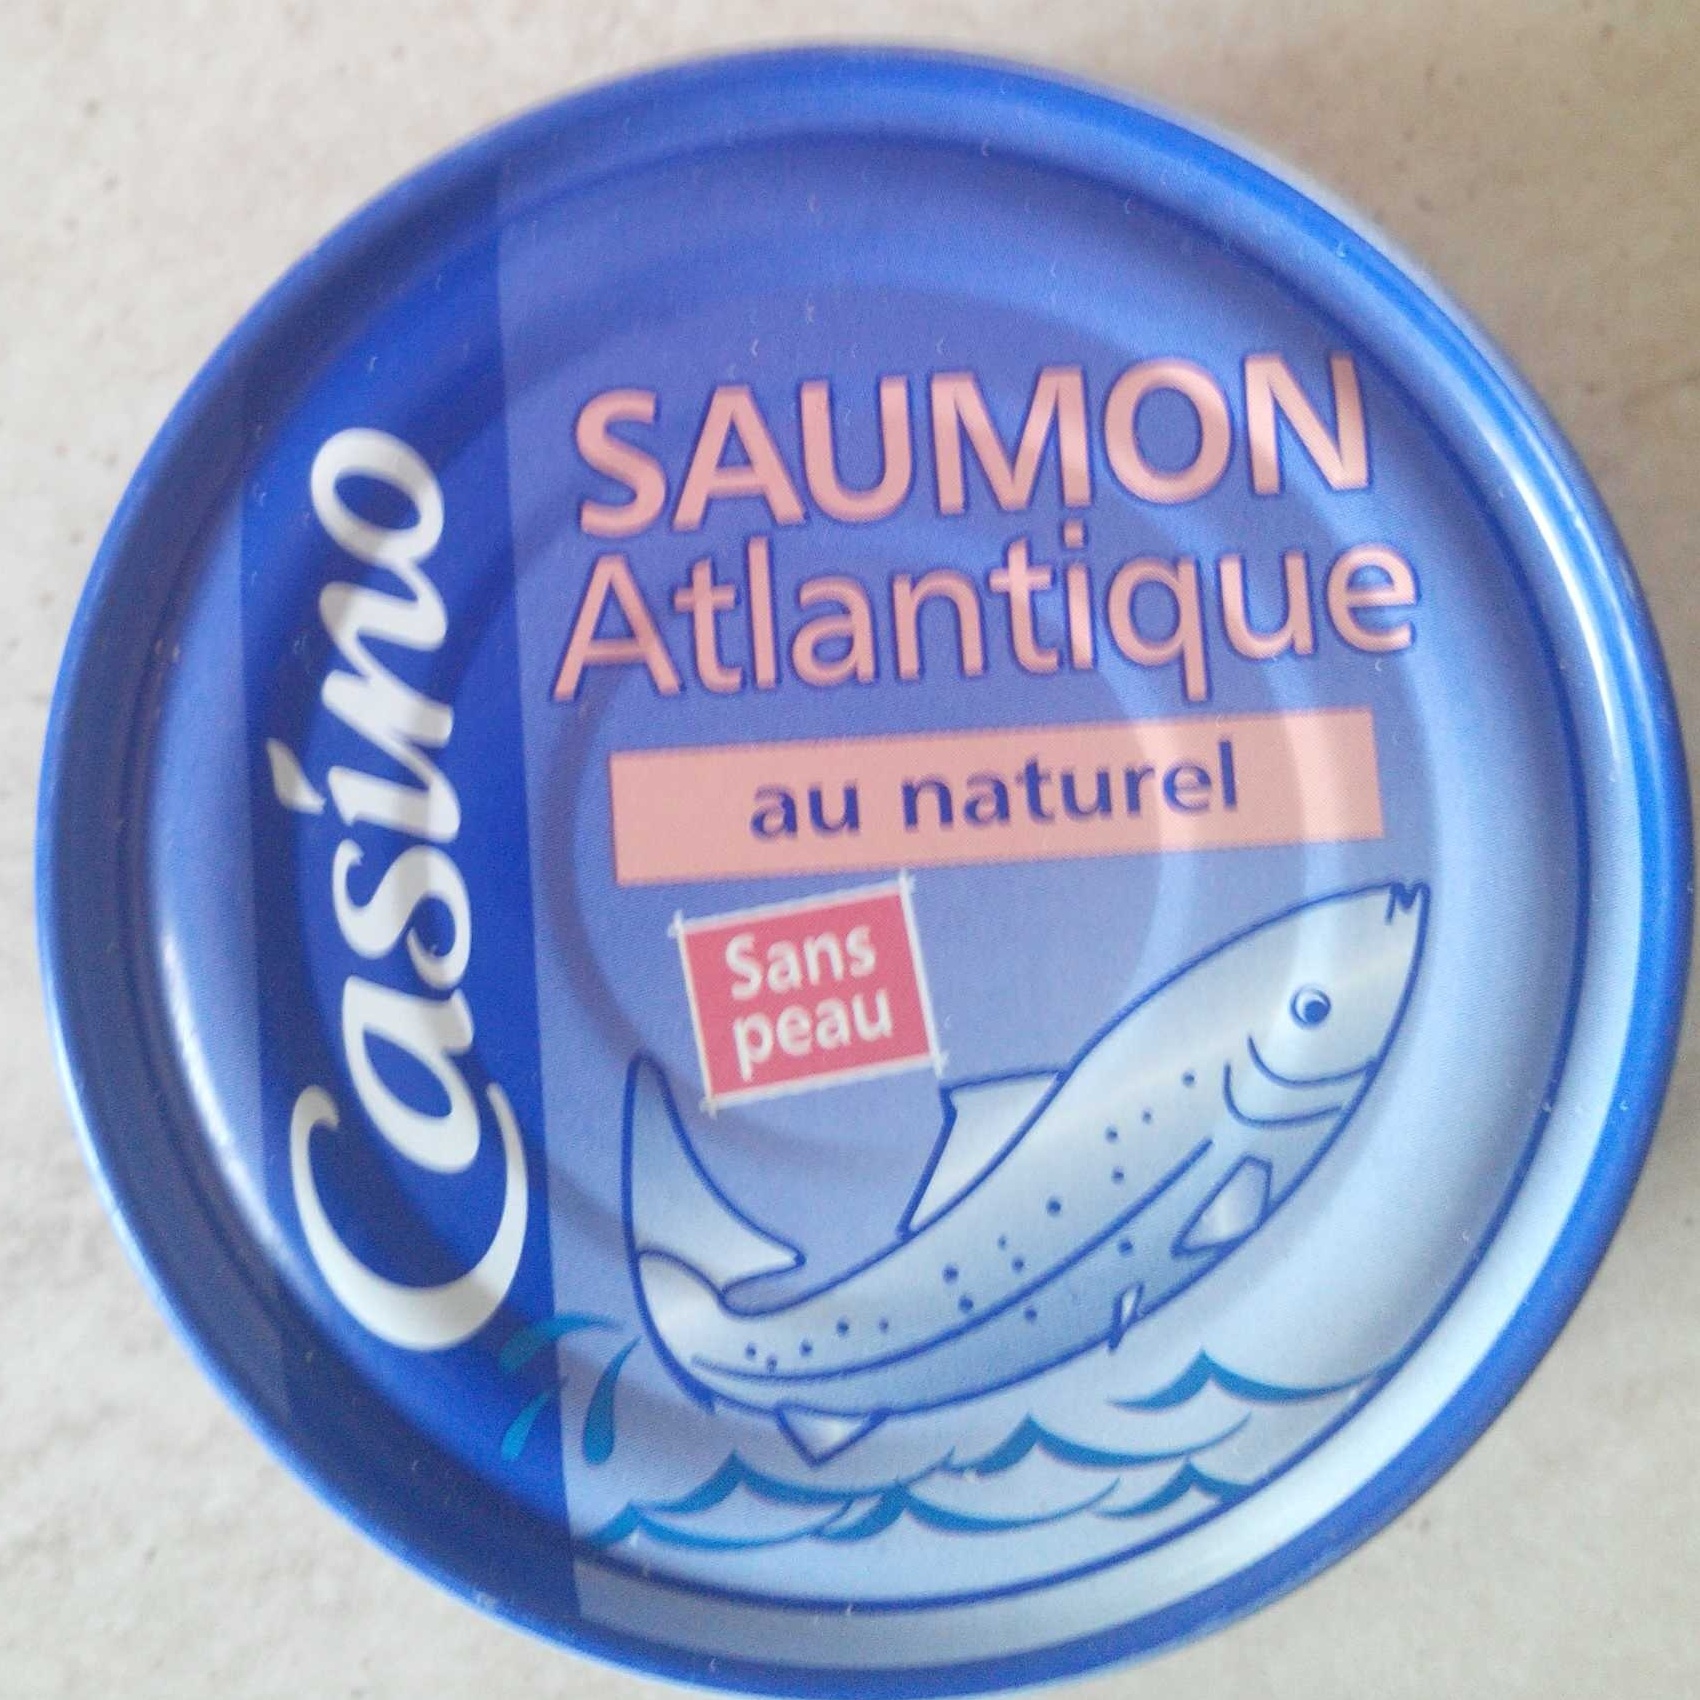 Saumon Atlantique au naturel sans peau sans arêtes - Producto - fr